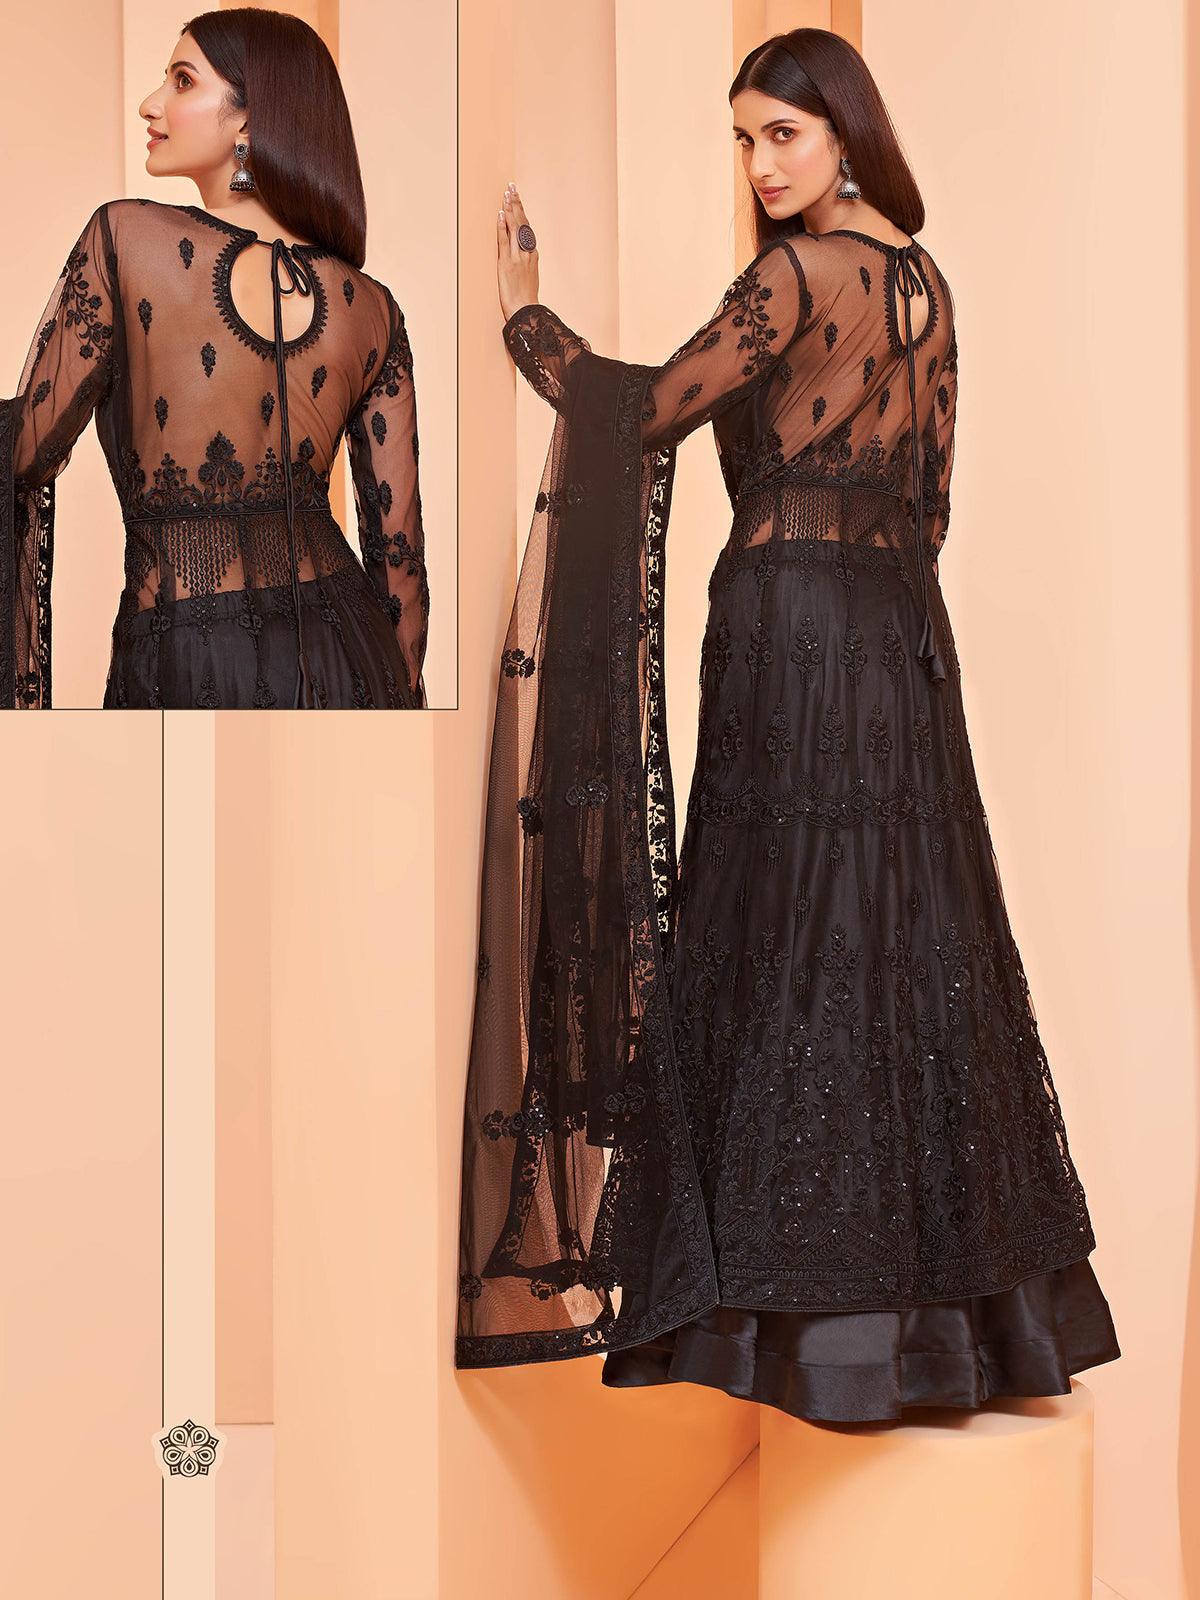 Women's Black Color Net Base Designer Anarkali Suit - Odette